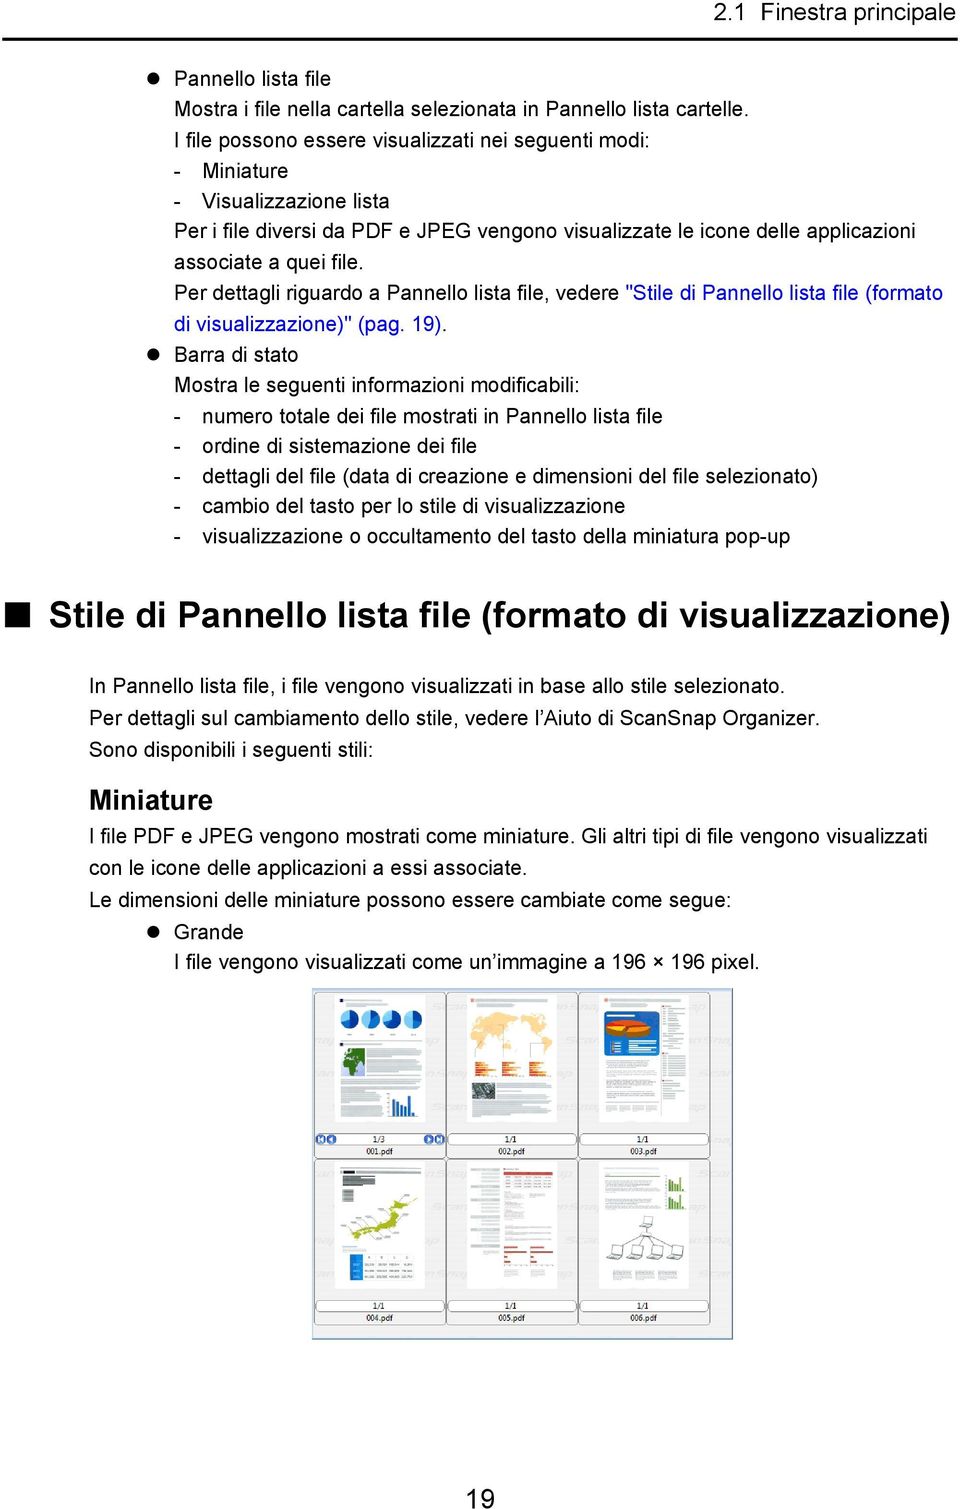 Per dettagli riguardo a Pannello lista file, vedere "Stile di Pannello lista file (formato di visualizzazione)" (pag. 19).